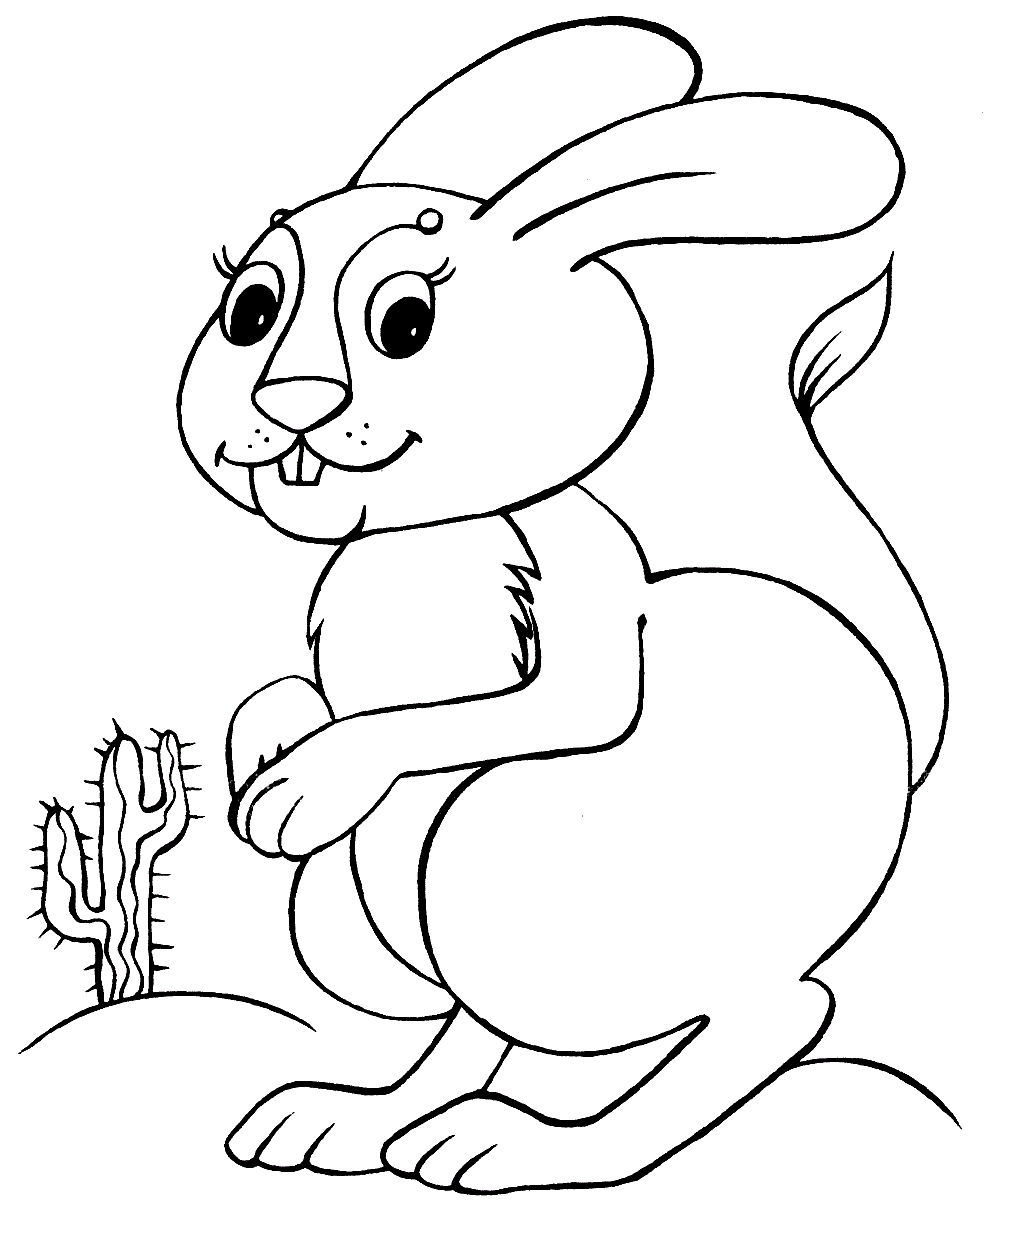 Kaninchen und Saguro-Kaktus in der Wüste von Bunny